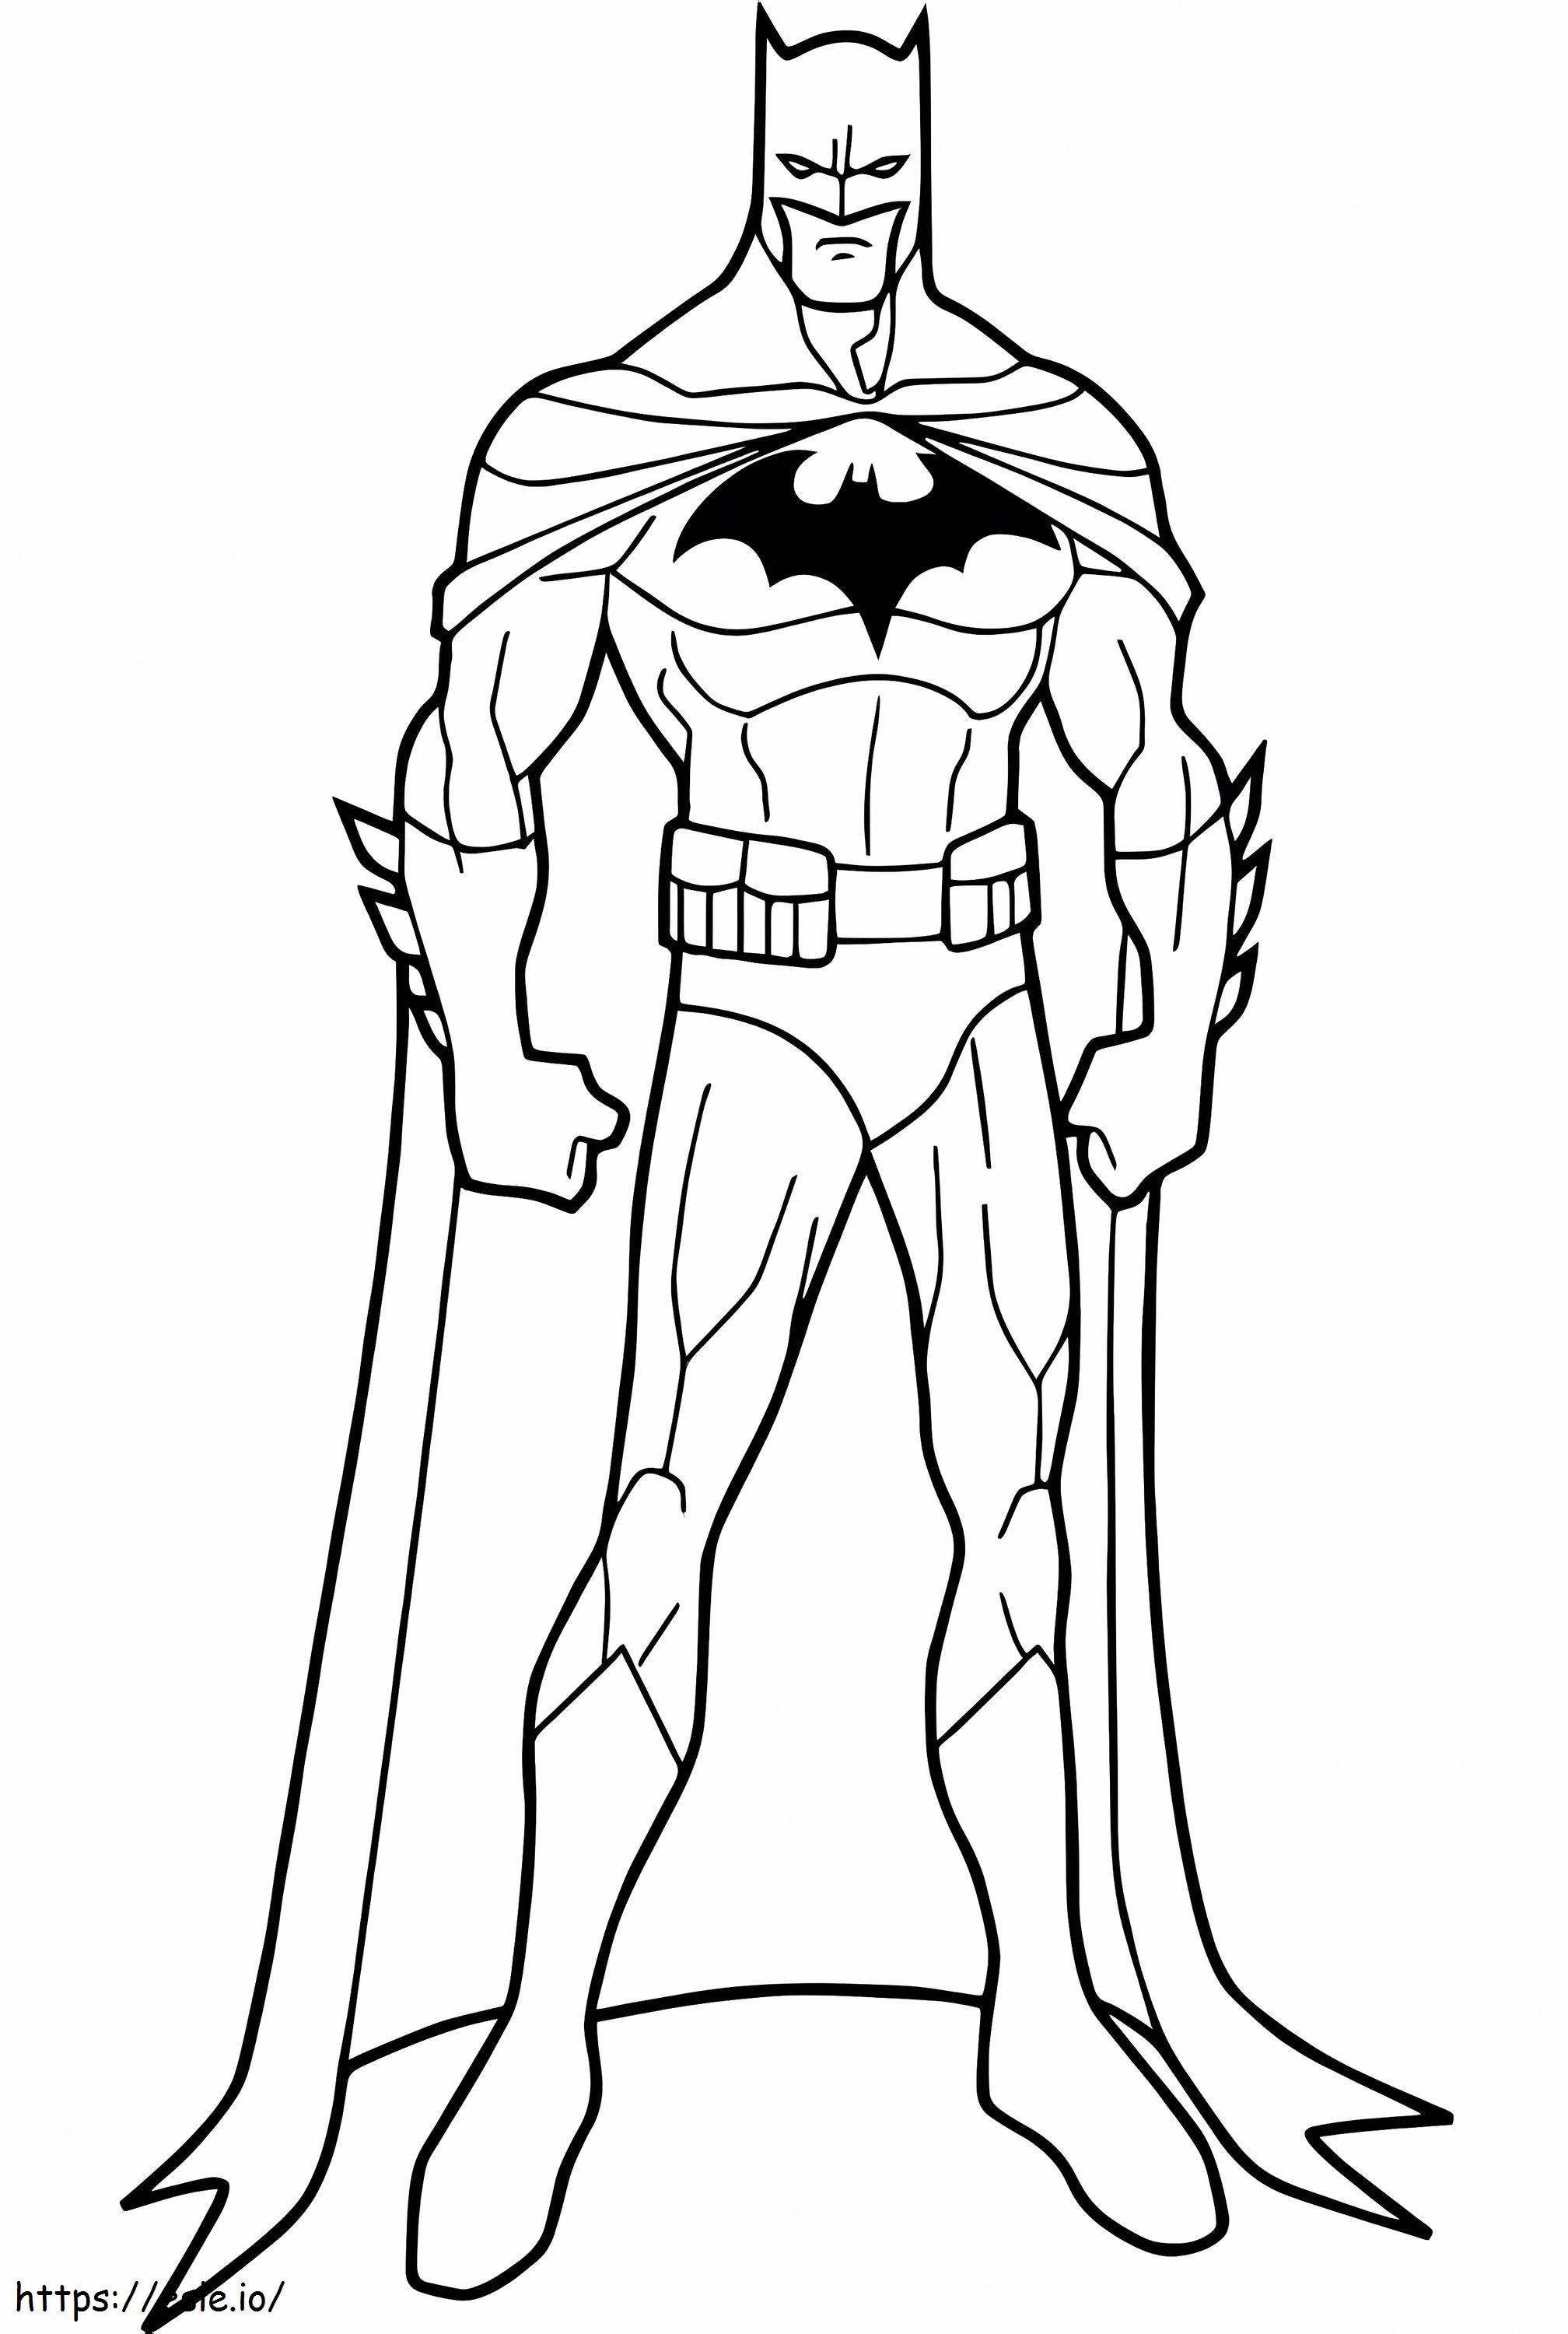 Coloriage Batman pose 688X1024 à imprimer dessin